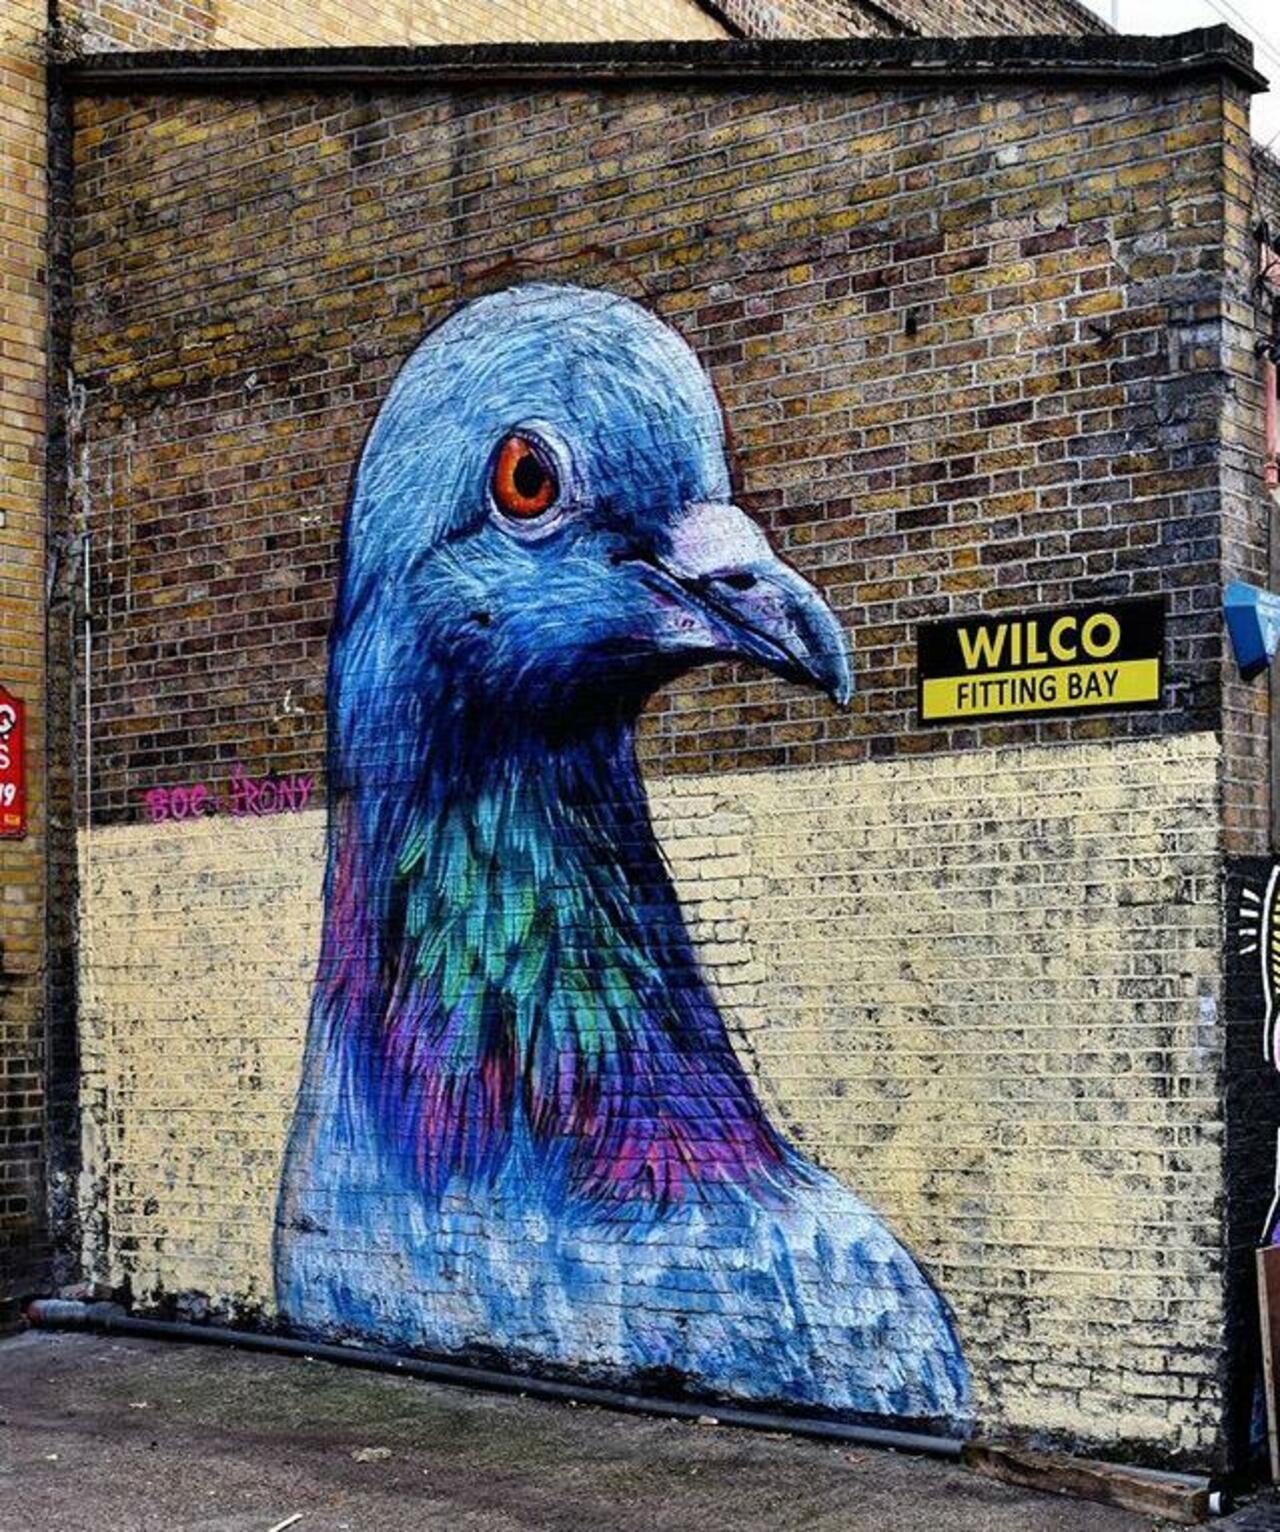 RT @GoogleStreetArt: Street Art by Placee Boe & whoamirony in London 

#art #graffiti #mural #streetart http://t.co/6RH4kRv2Xu